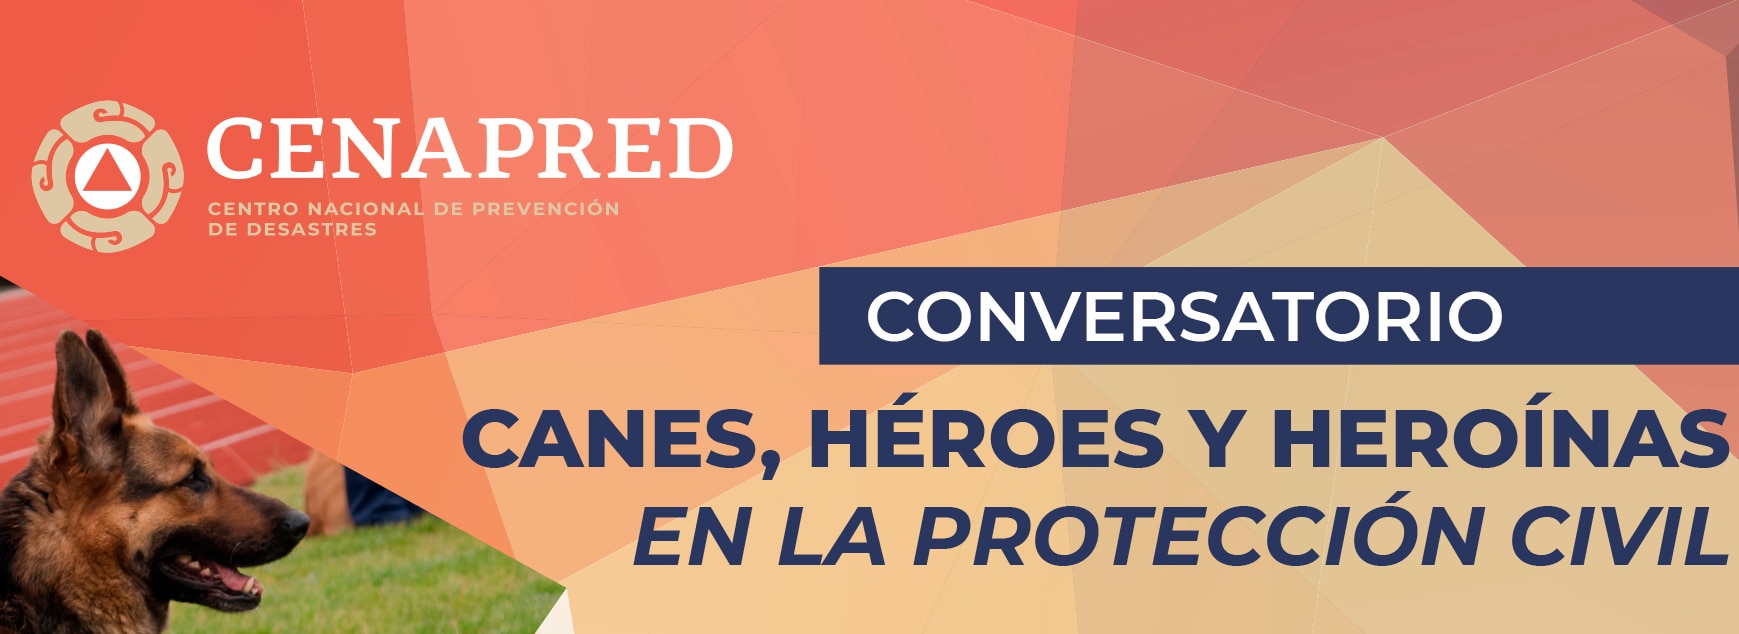 Imagen del conversatorio "Canes, héroes y heroínas en la protección civil.